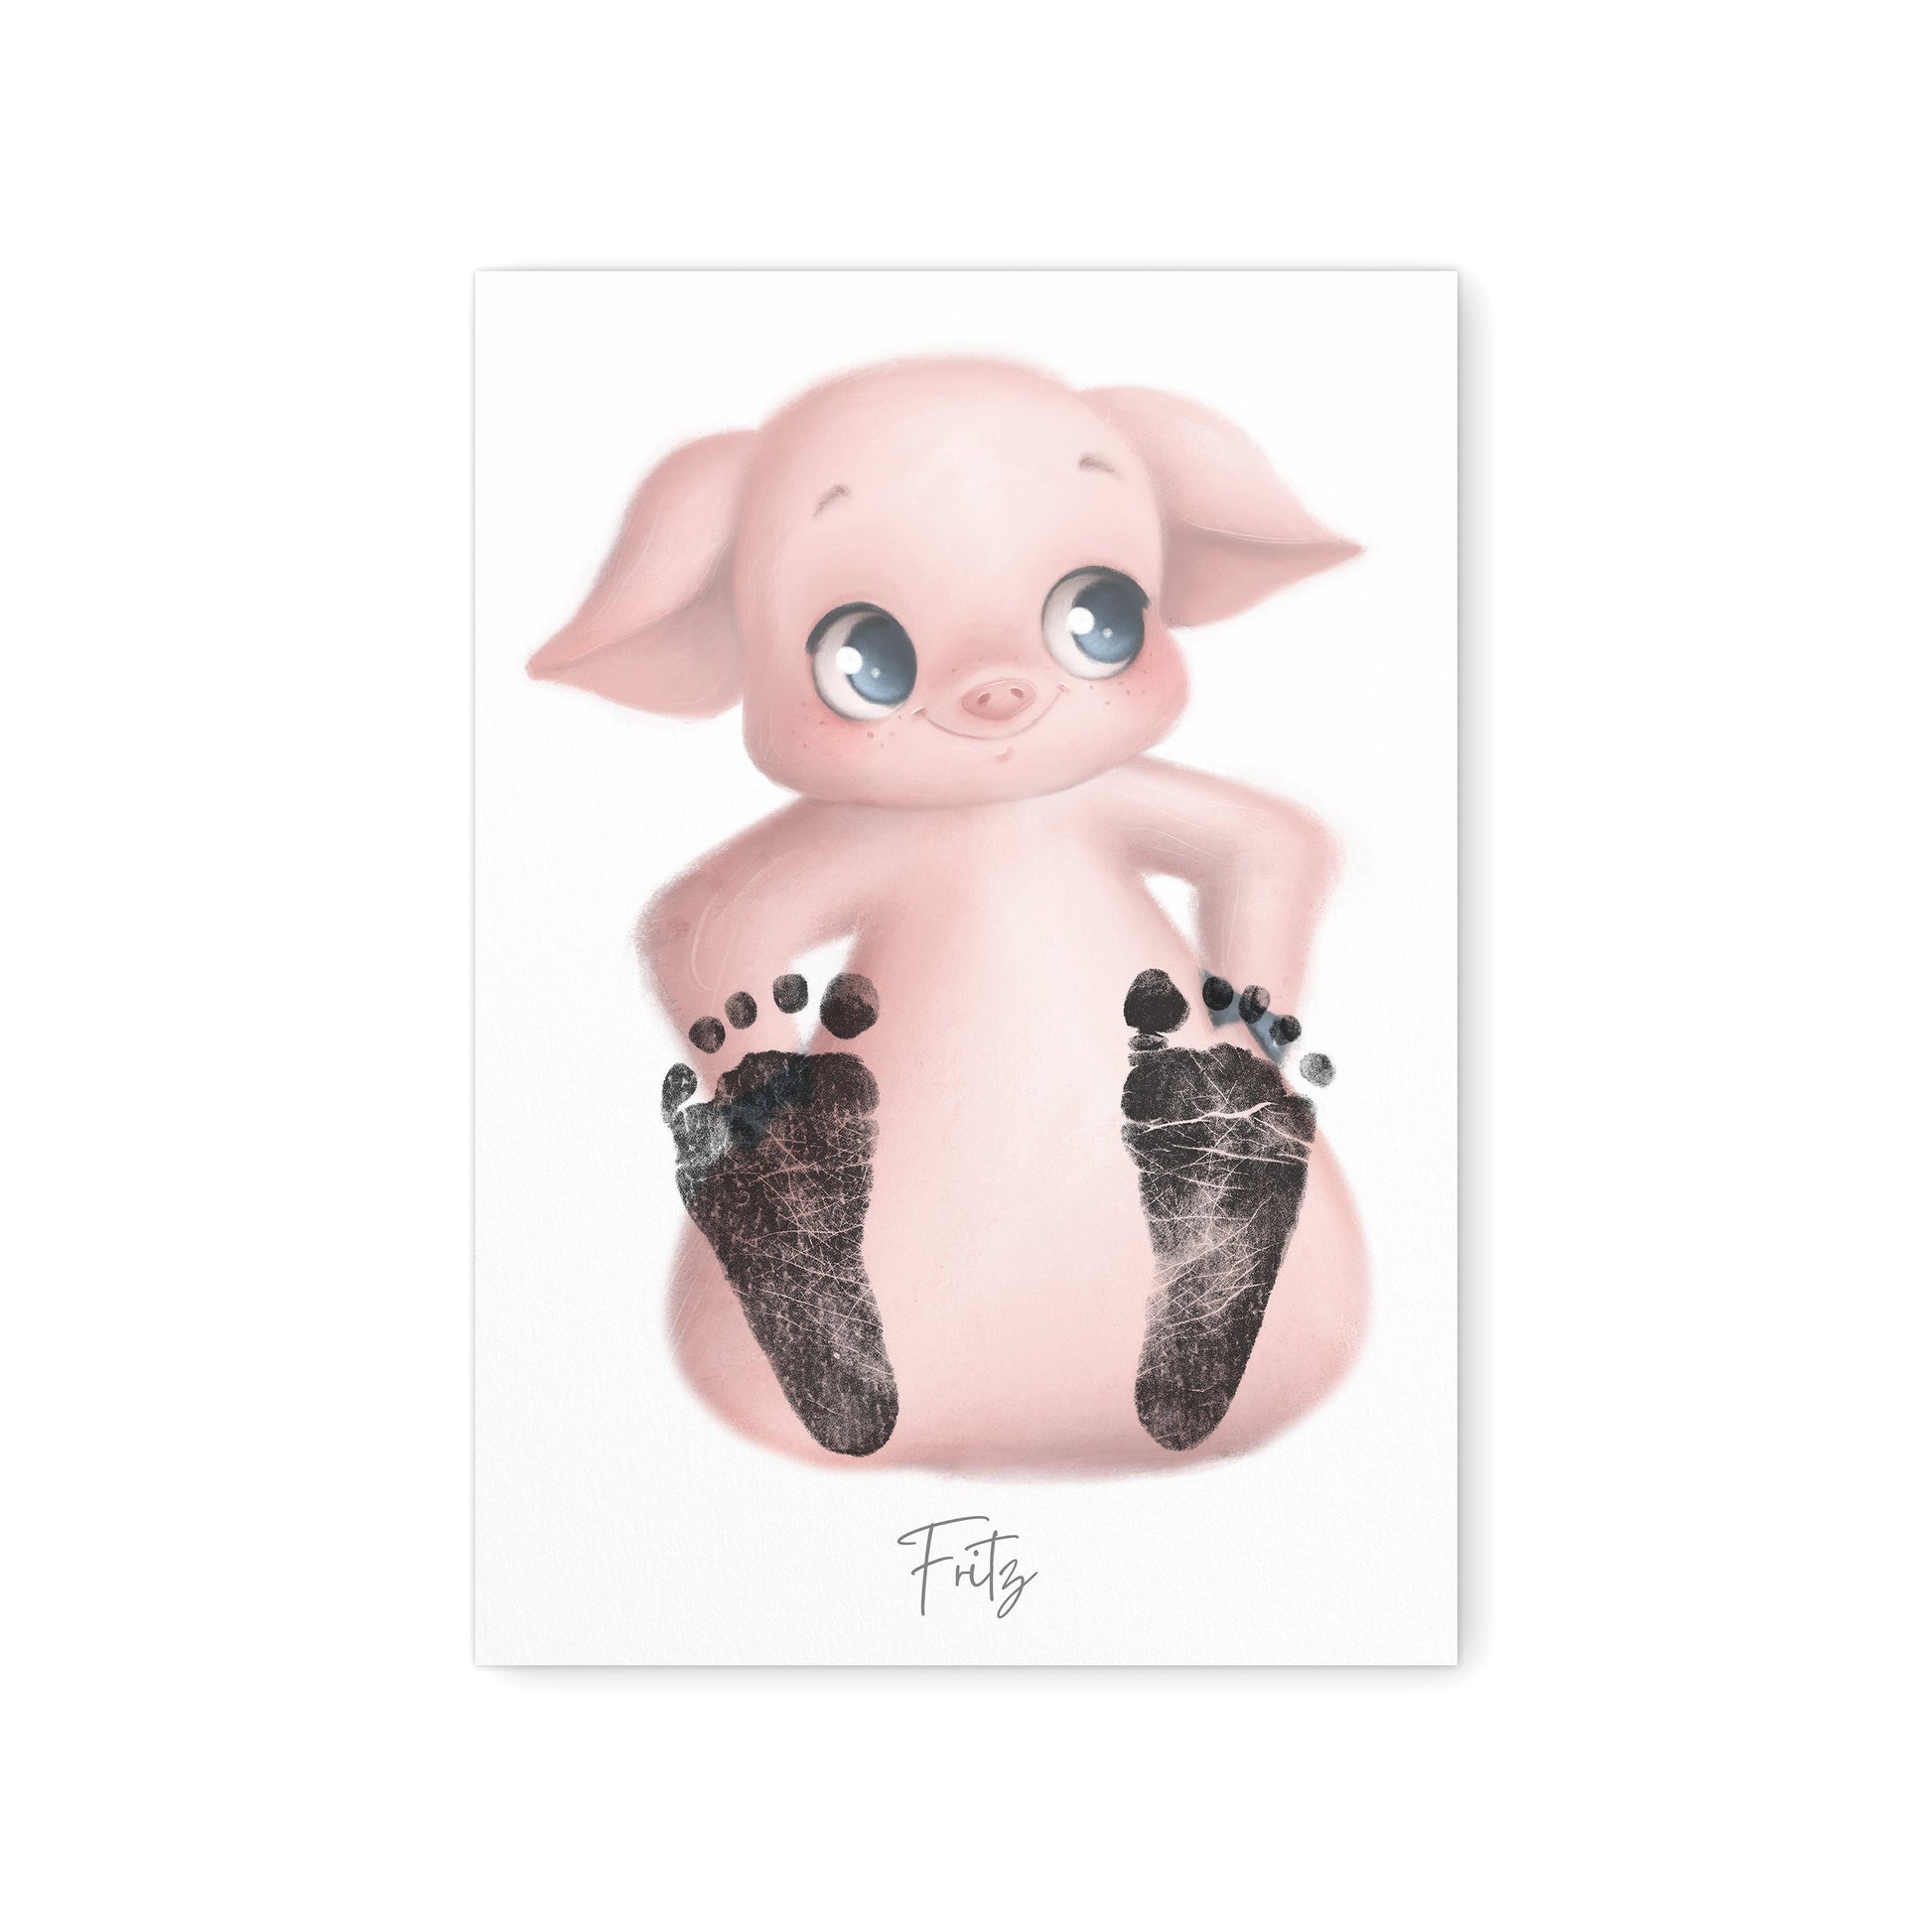 Baby Fußabdruck Bild Schwein Fußabdrücke Personalisiert Babygeschenk zur Geburt Geschenk Kleinkind Kinderzimmerdeko (Ohne Farbe)